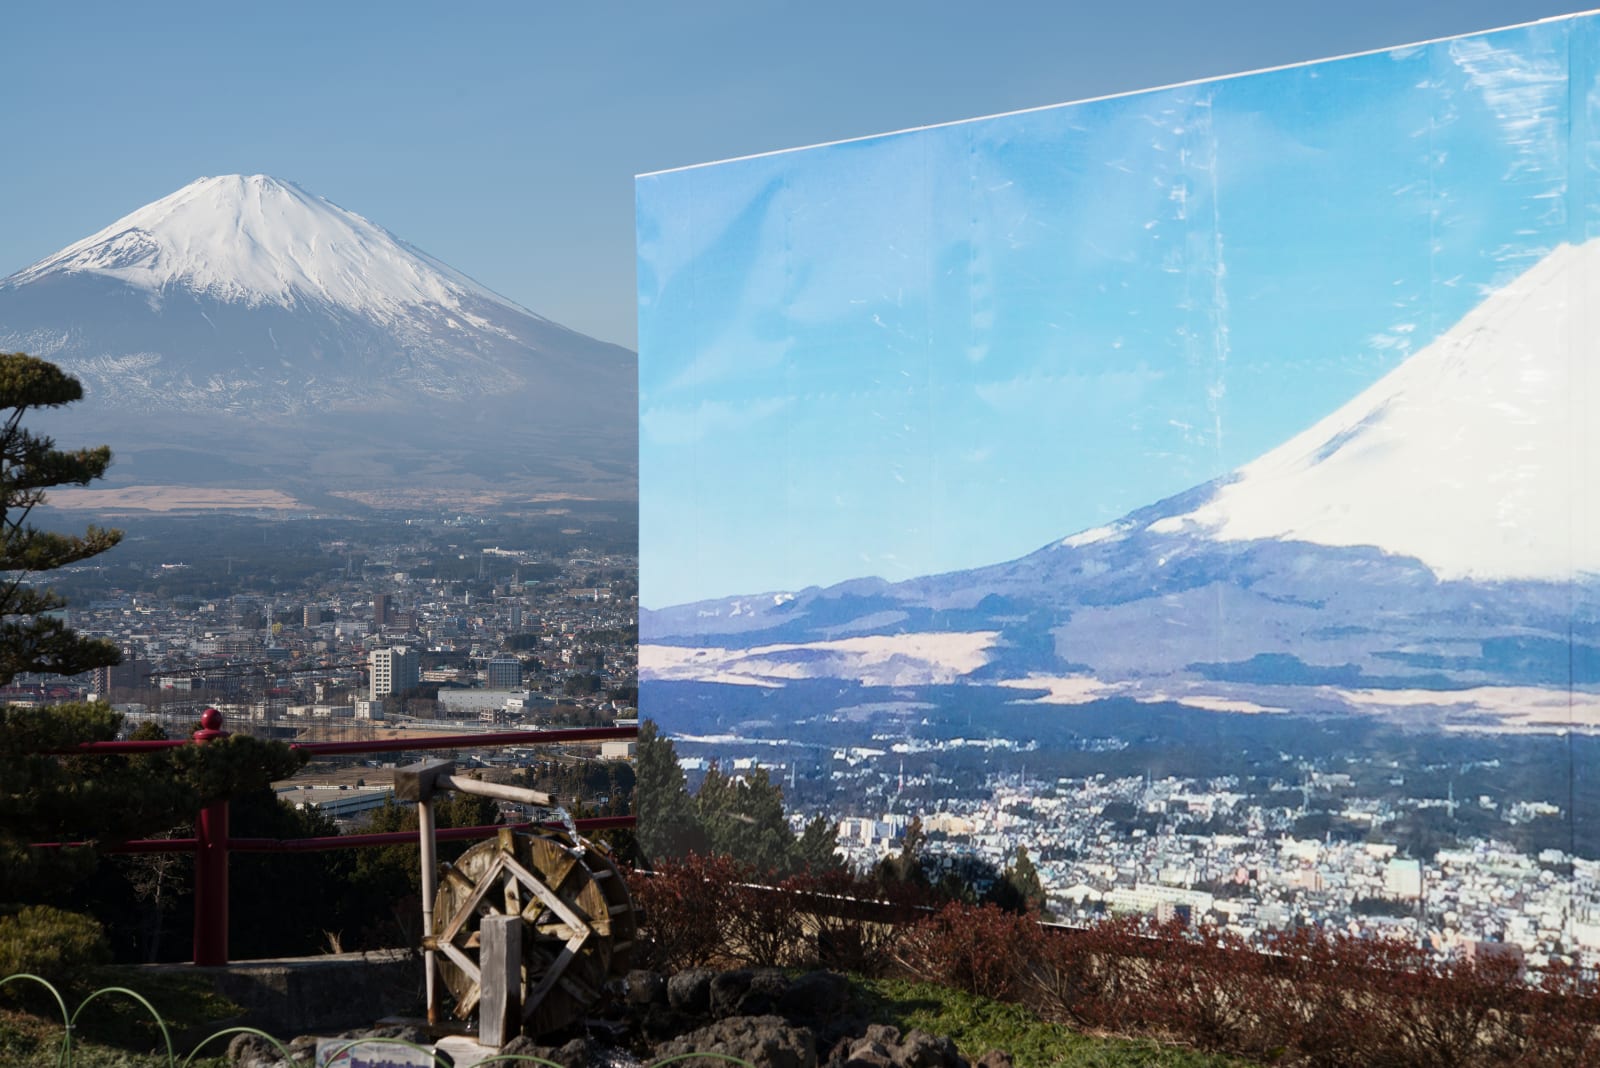 Two Mt Fuji